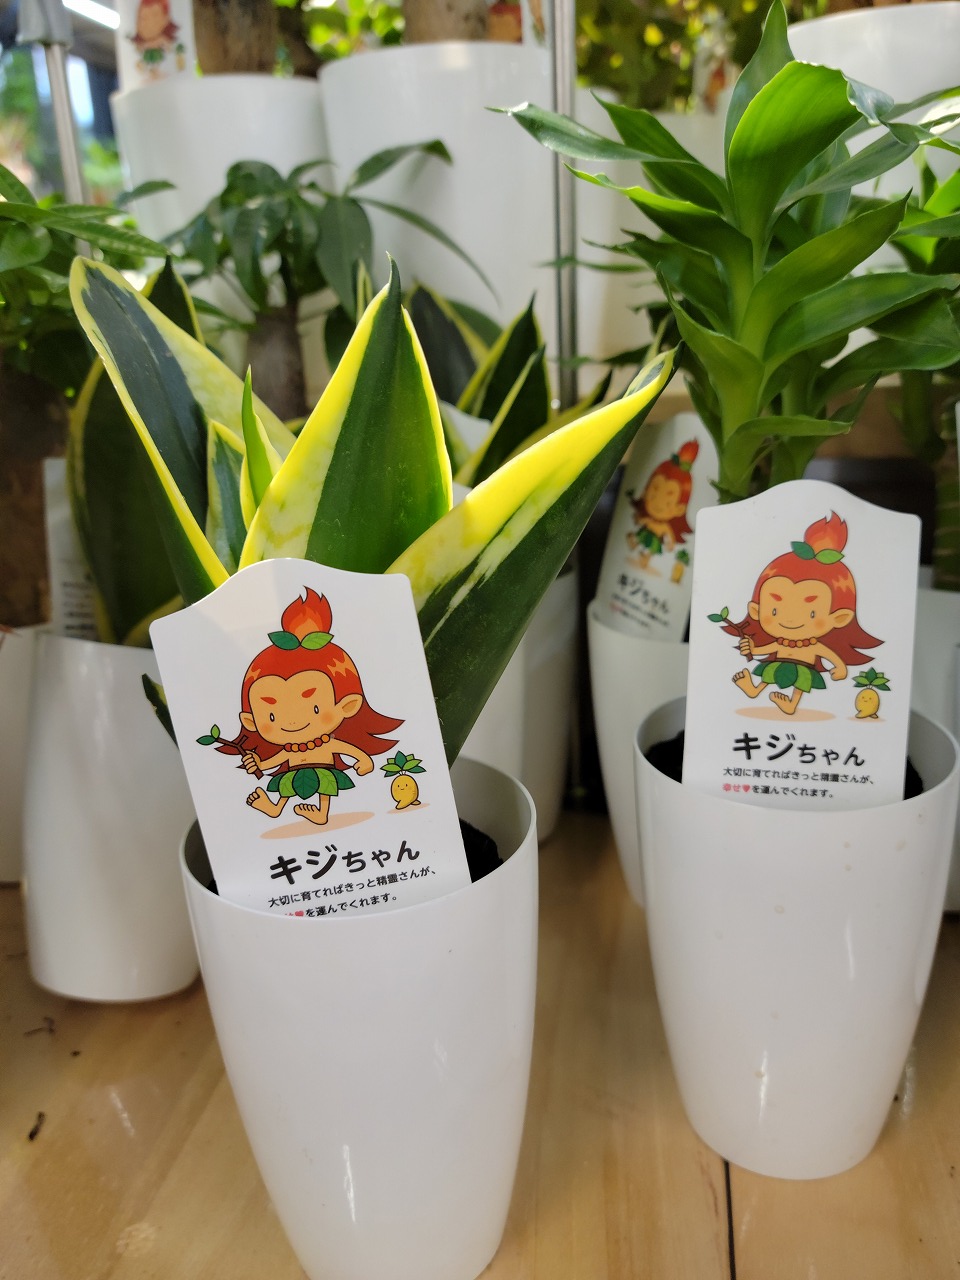 くりすみひろ Globalgarden広報担当 ホームセンターでキジちゃんのミニ観葉植物が並んでました キジムナーとは沖縄に伝承される樹木の精霊のことです ラベルも可愛い T Co Sbbrnlxlqp Twitter